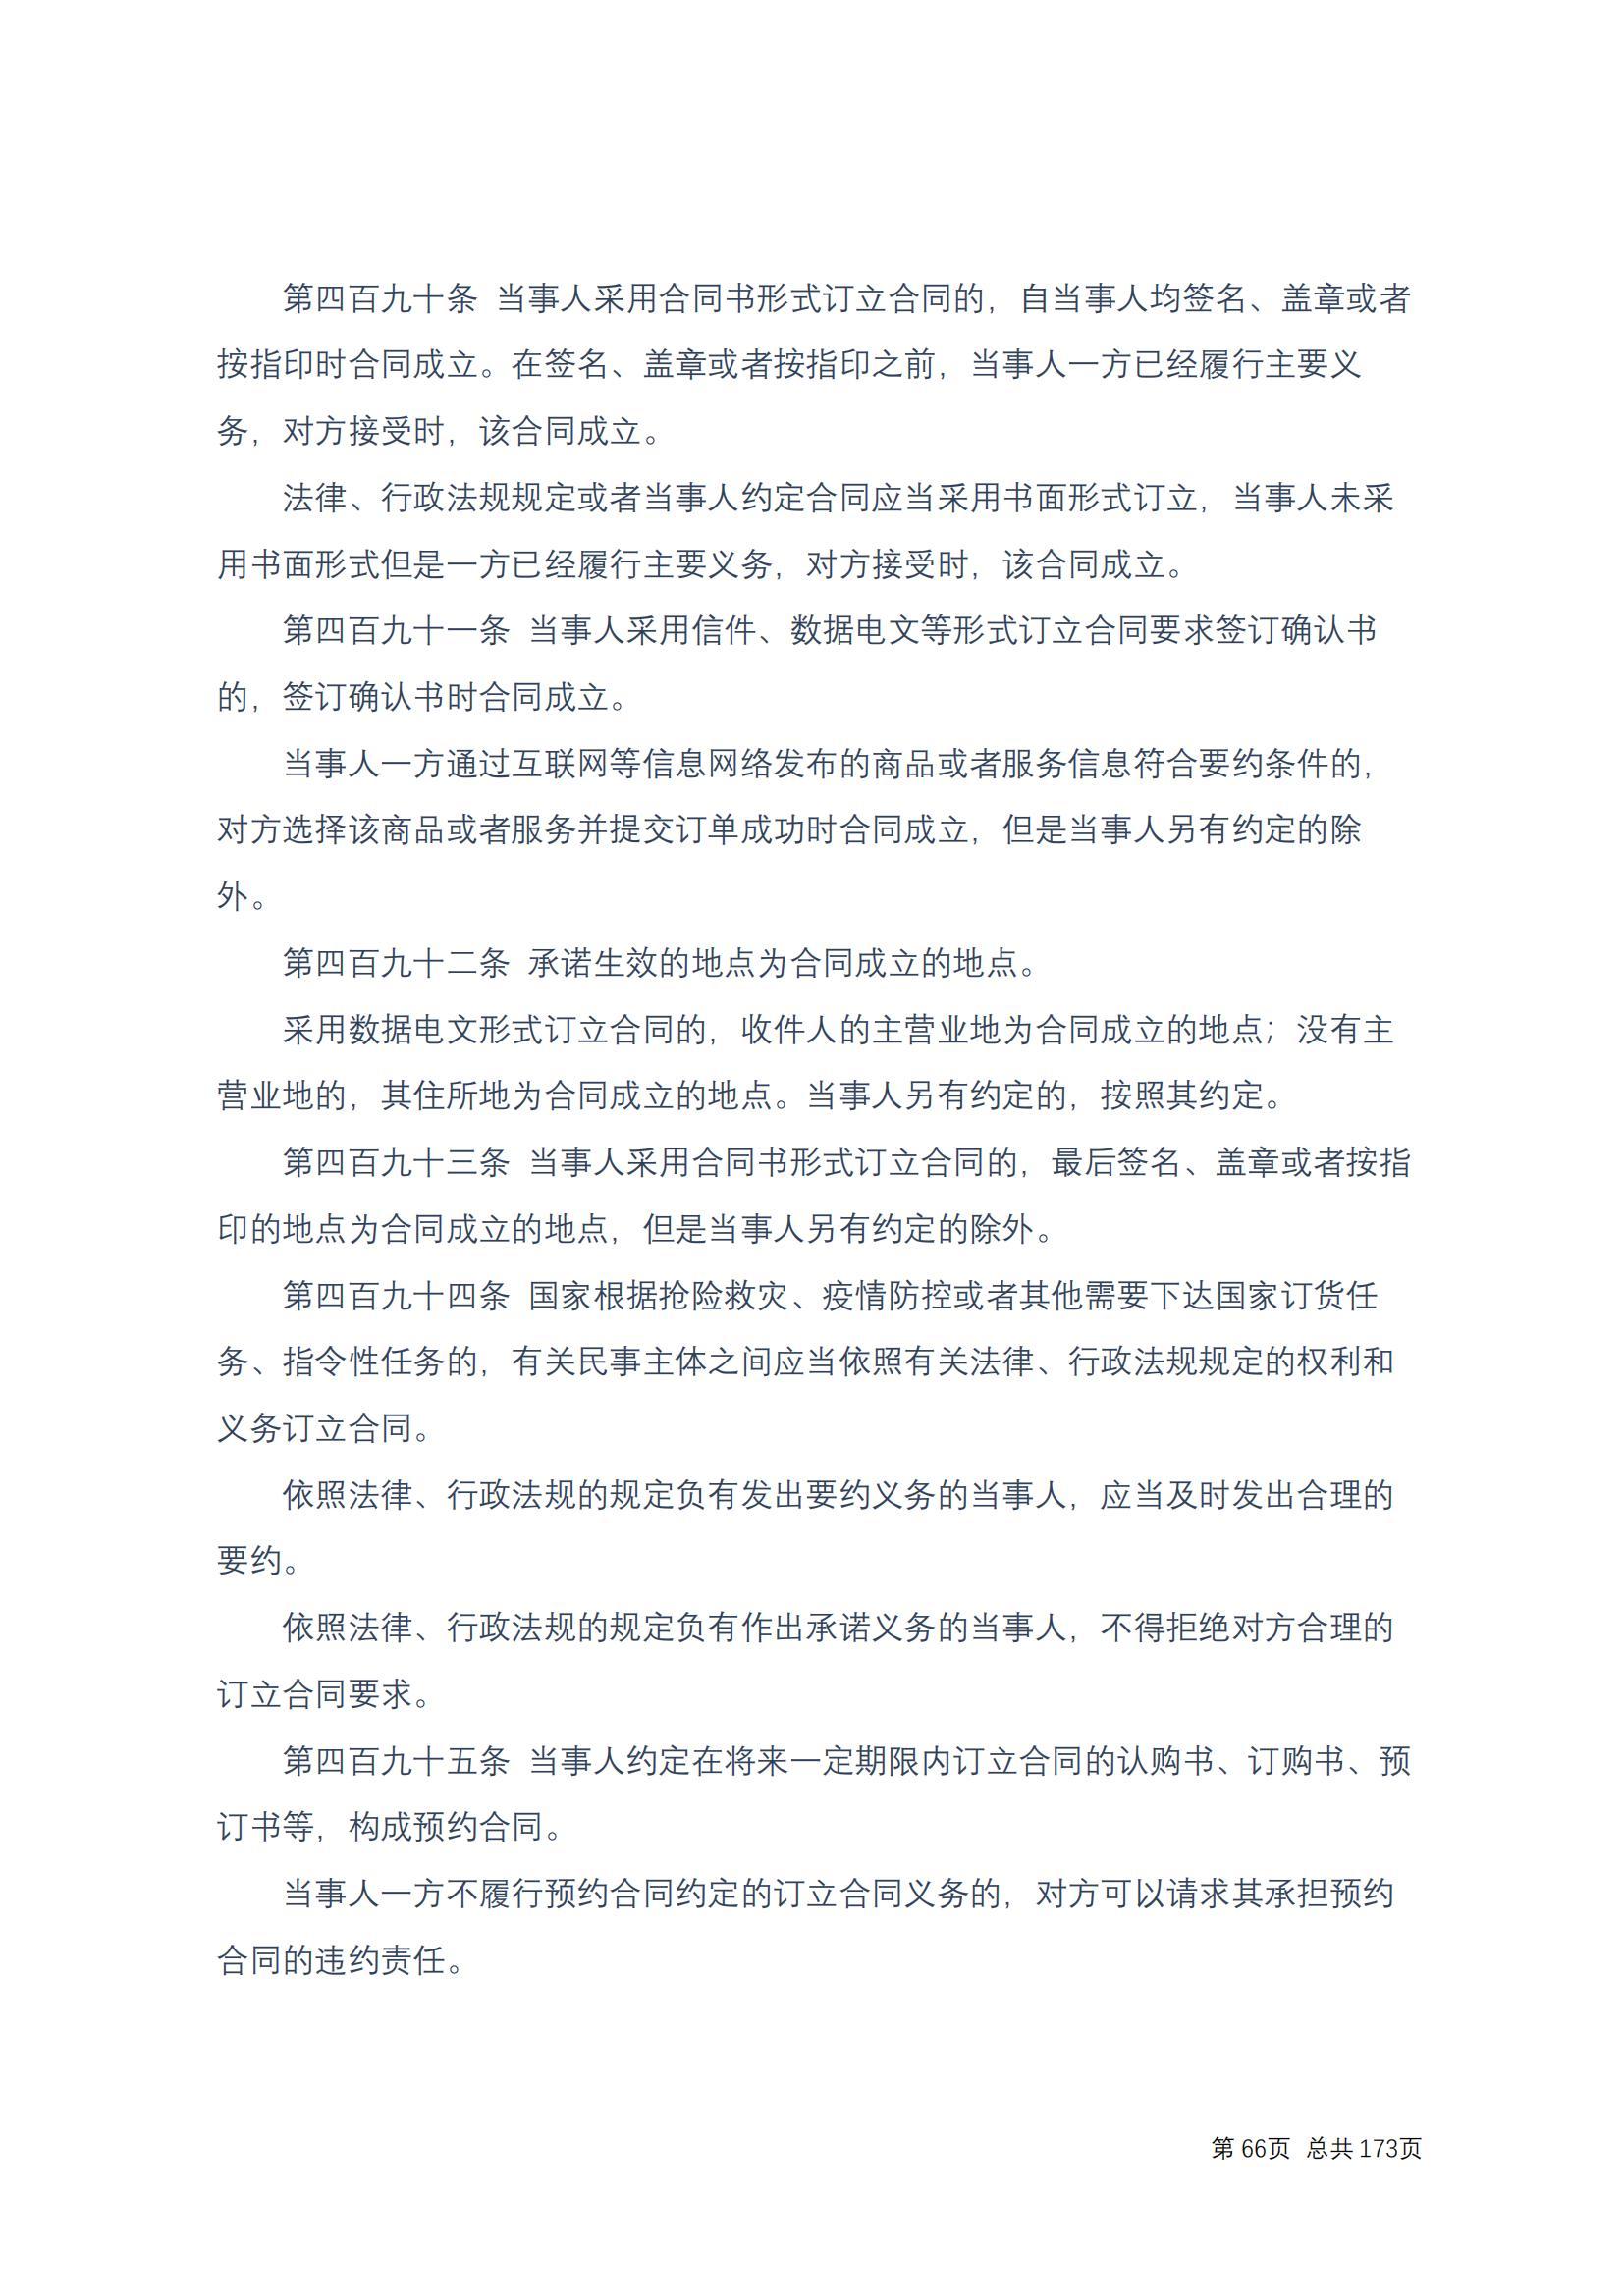 中华人民共和国民法典 修改过_65